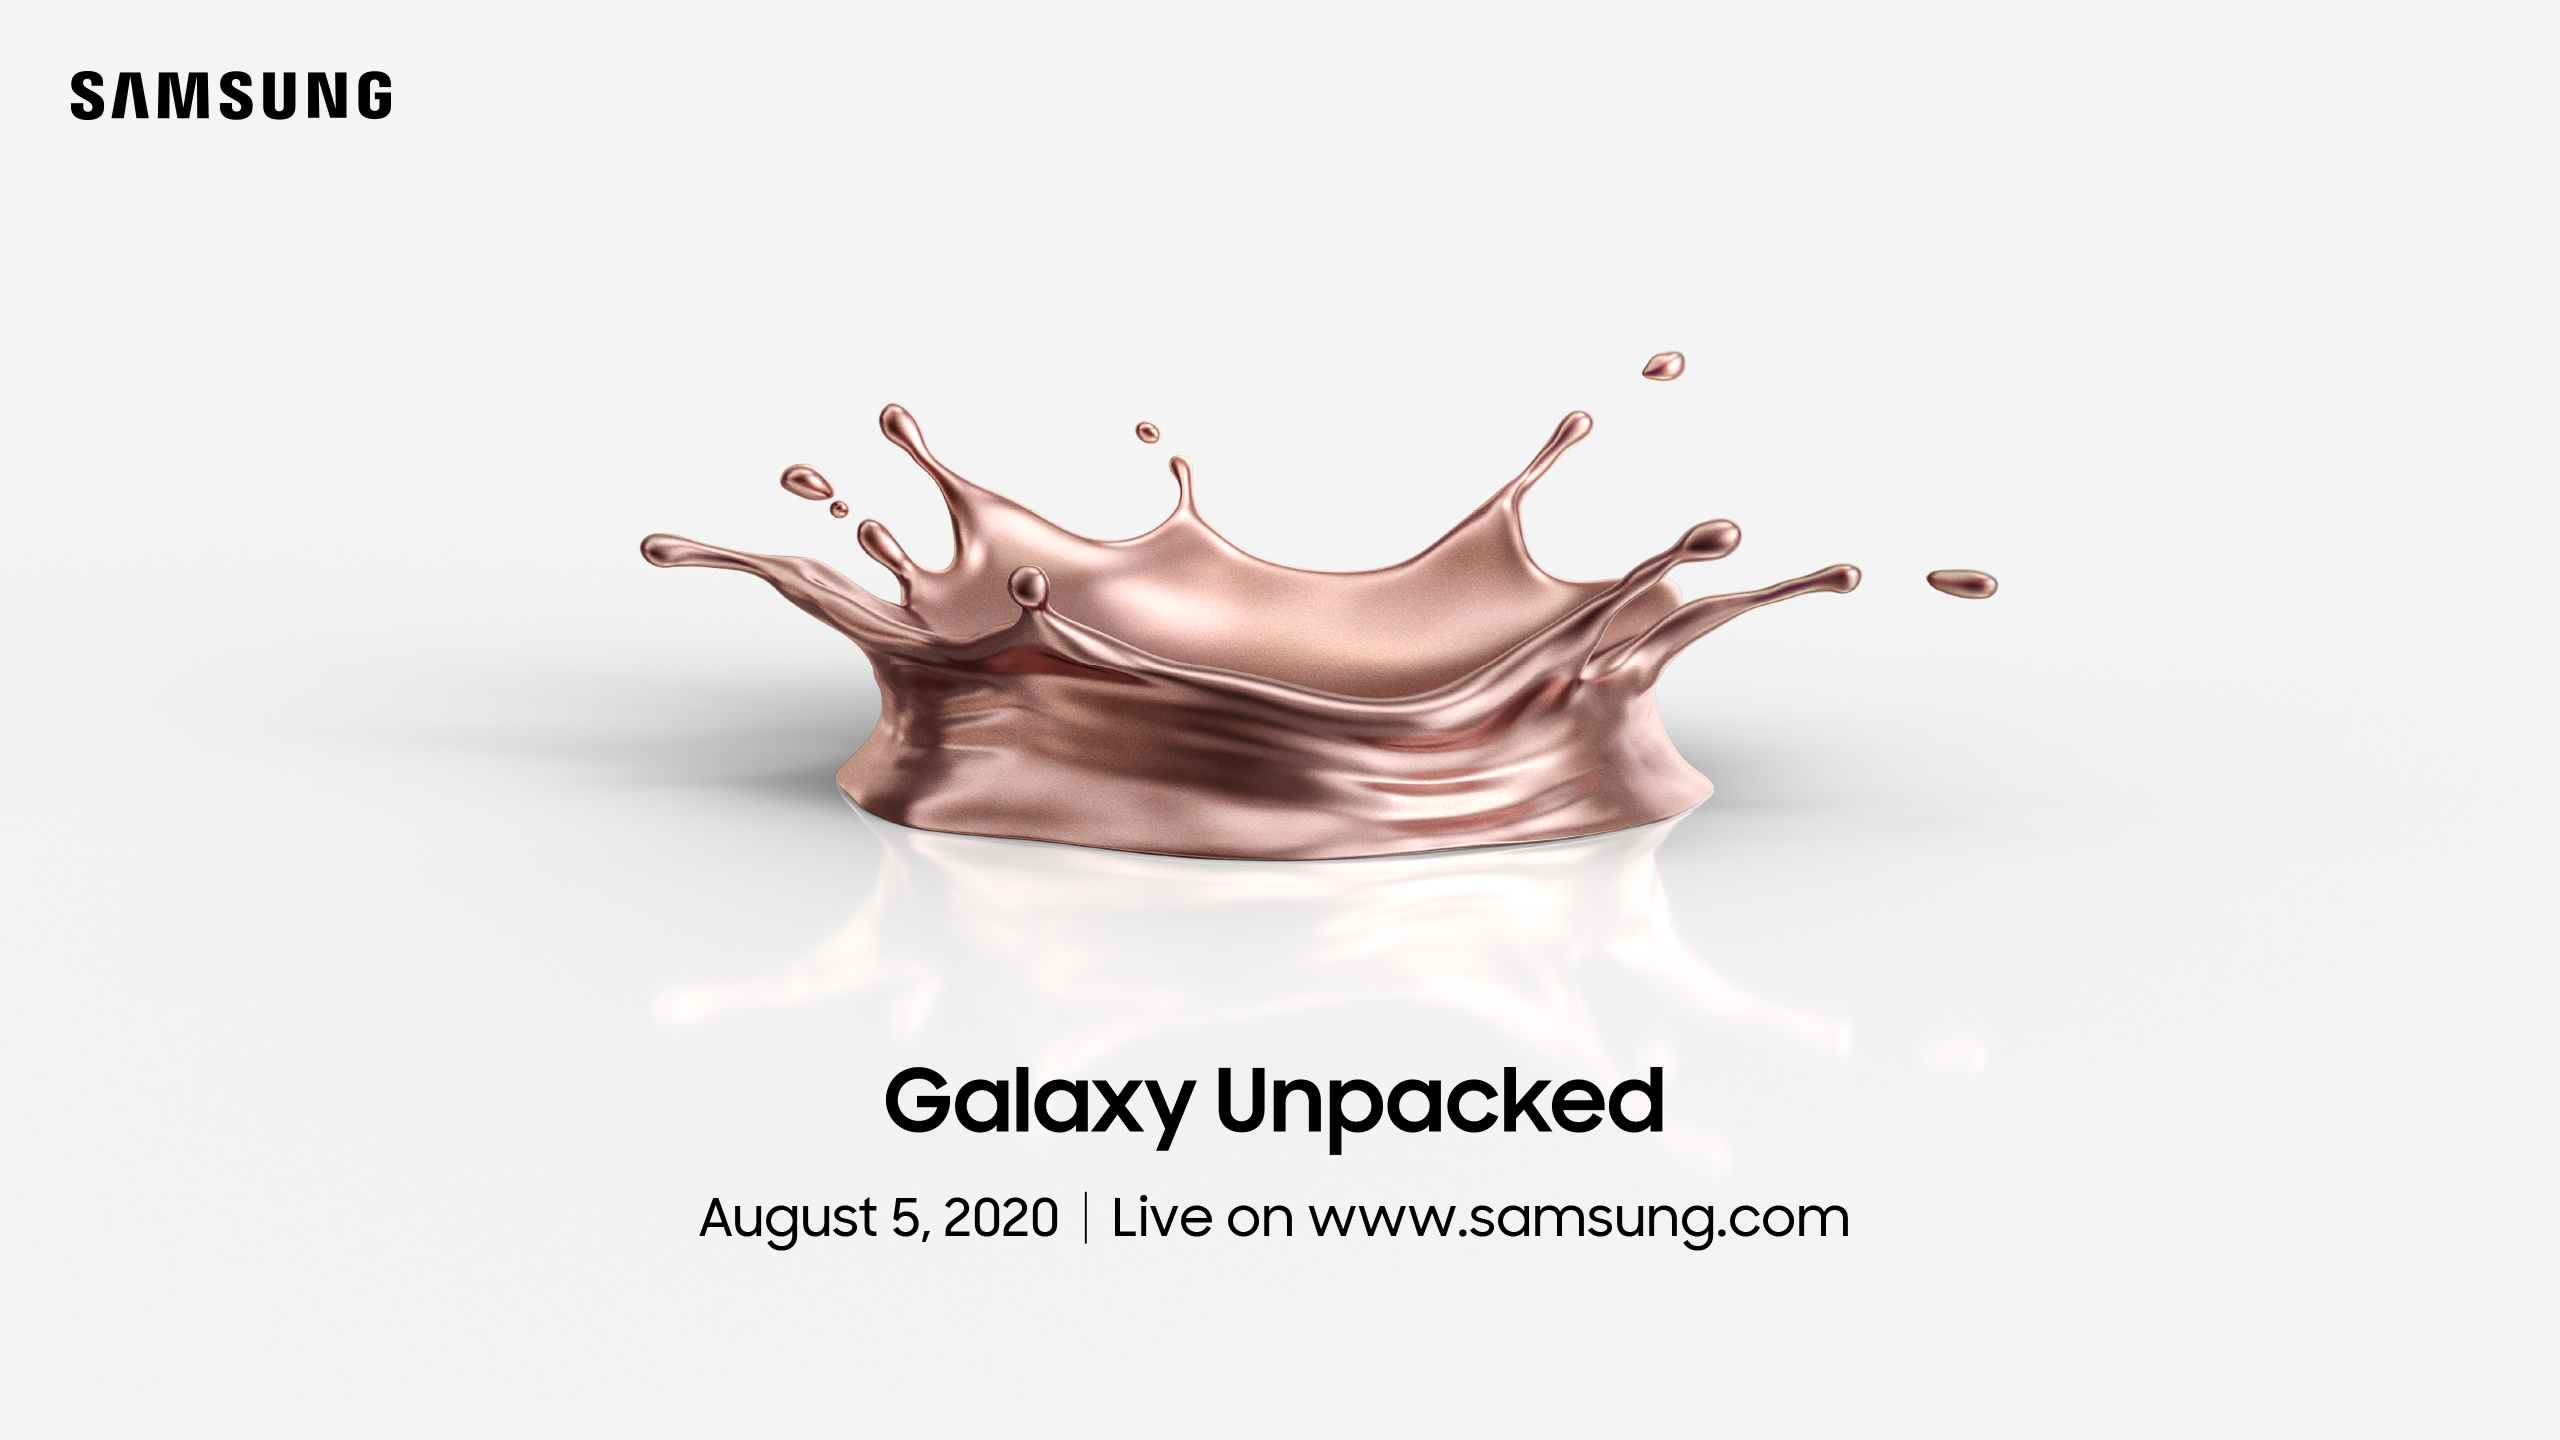 พบกับ Samsung Galaxy Unpacked Virtual Event เปิดตัวสมาร์ทดีไวซ์ล่าสุด วันพุธที่ 5 สิงหาคม เวลา 21.00 น.